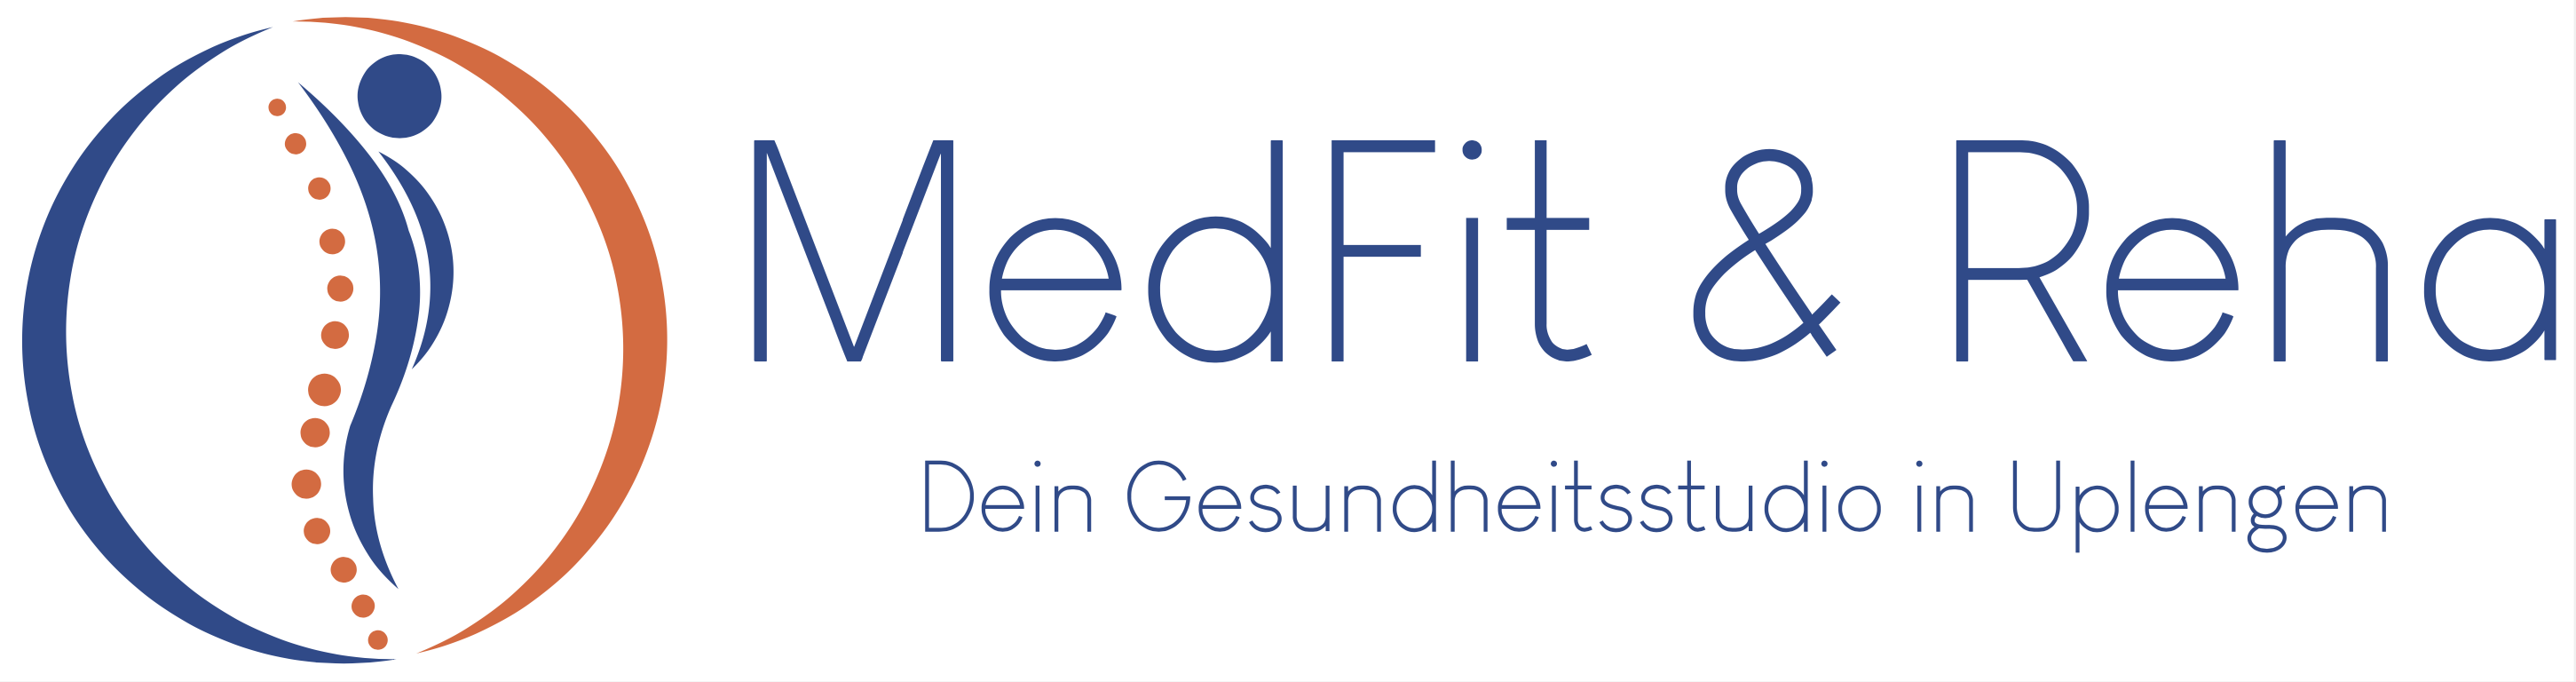 MedFit & Reha Remels - Gesundheitsstudio in Uplengen